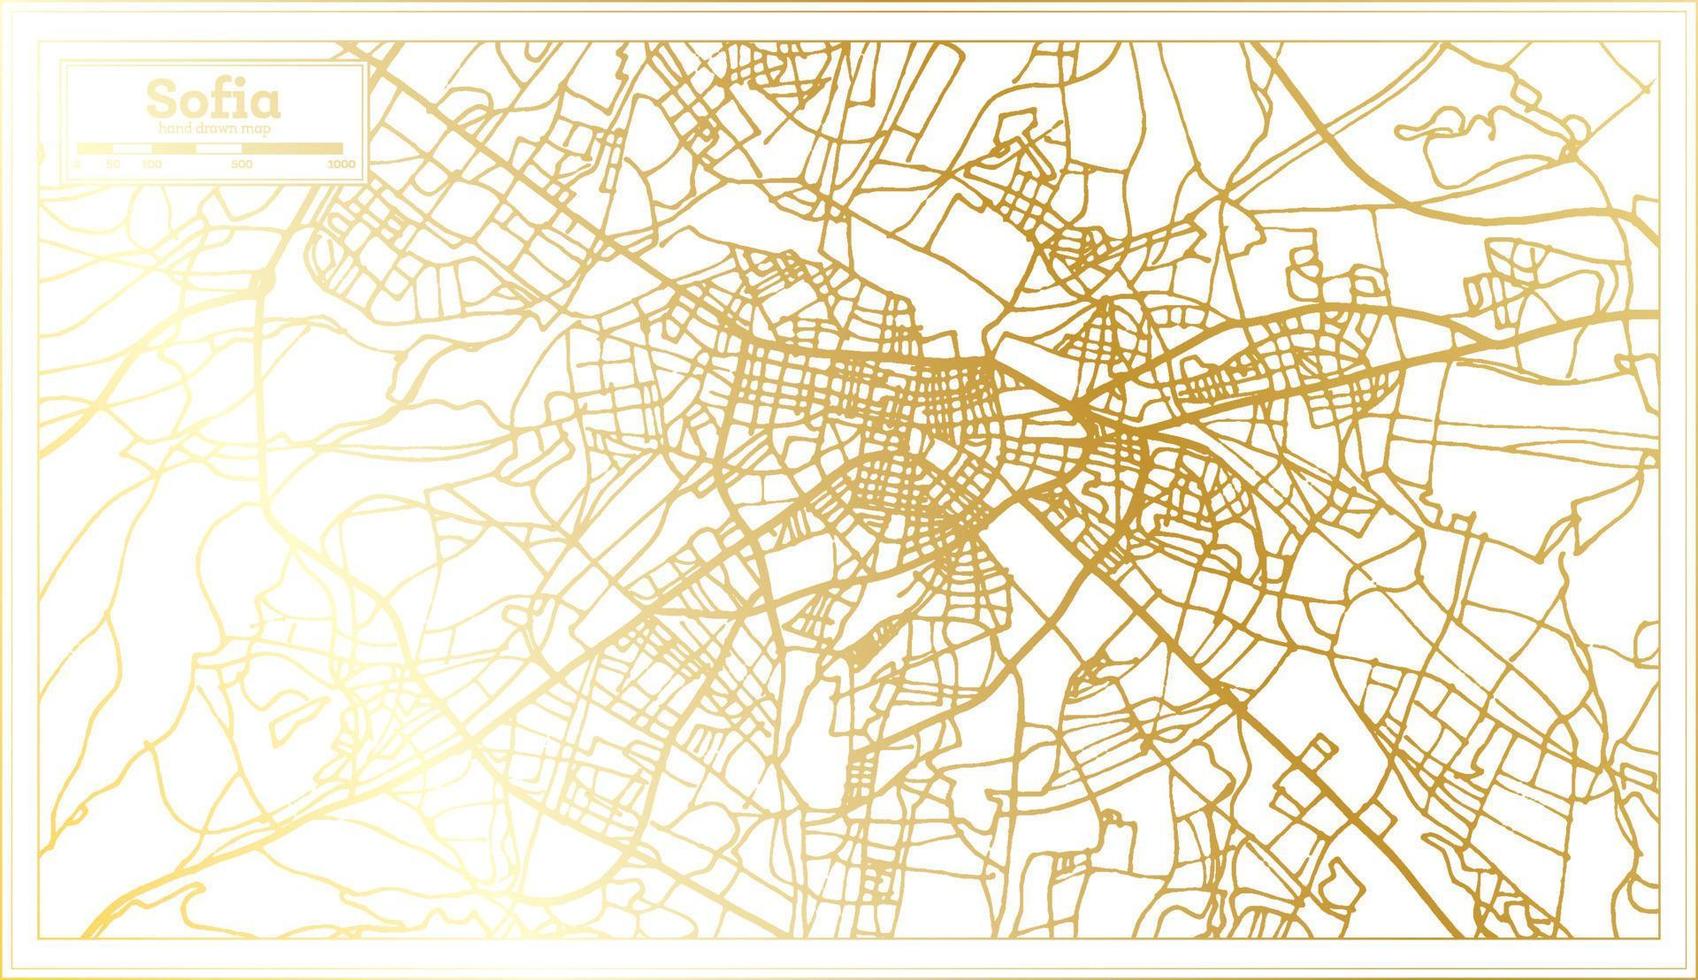 plan de la ville de sofia bulgarie dans un style rétro de couleur dorée. carte muette. vecteur